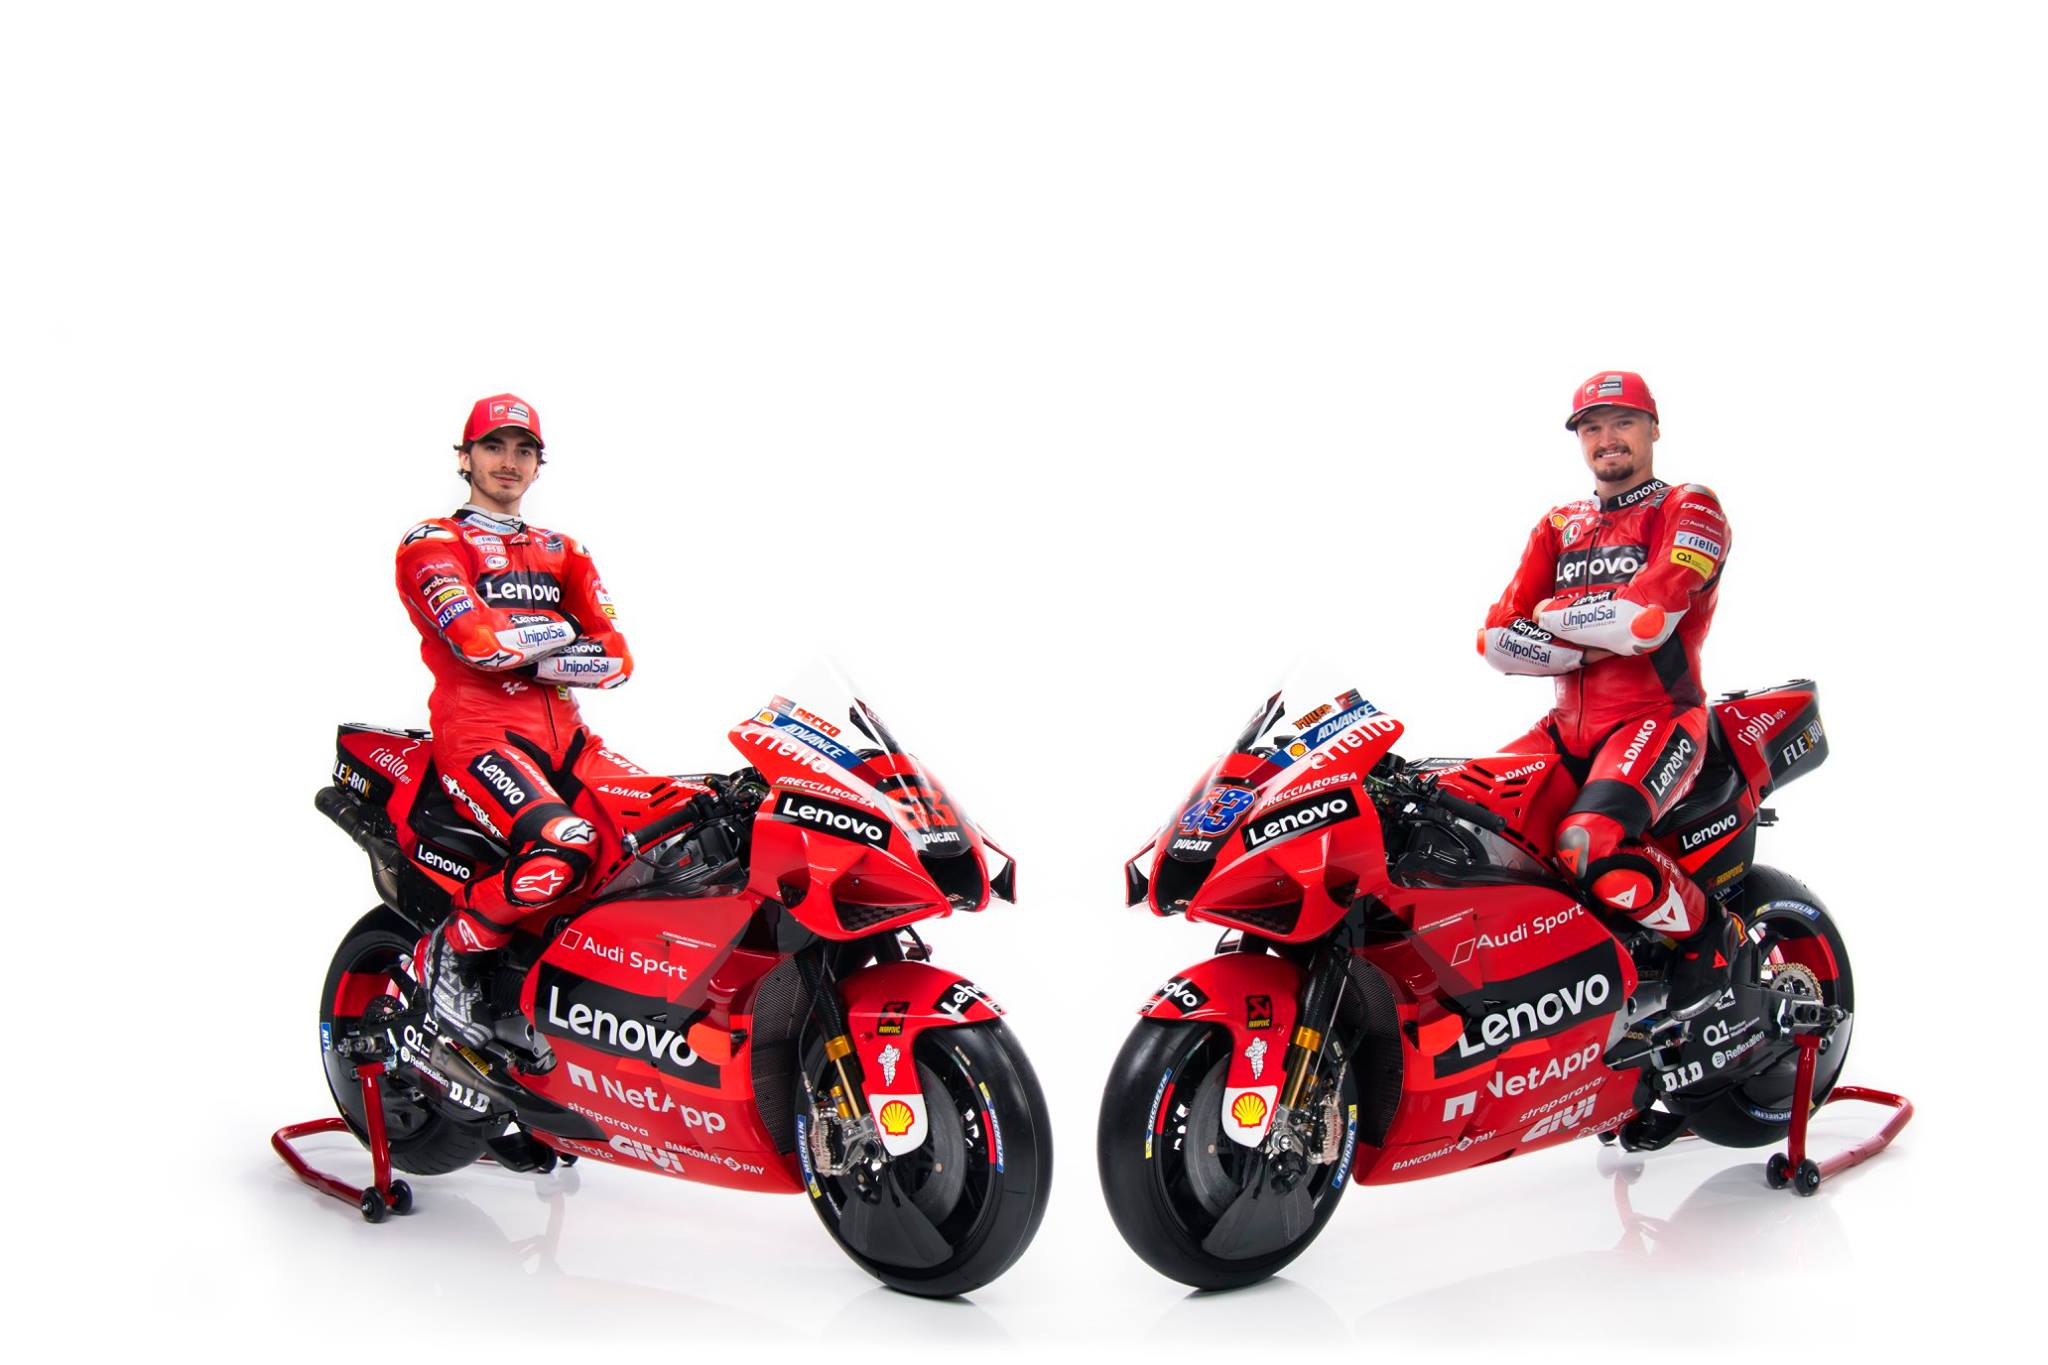 Presentación del equipo Ducati.